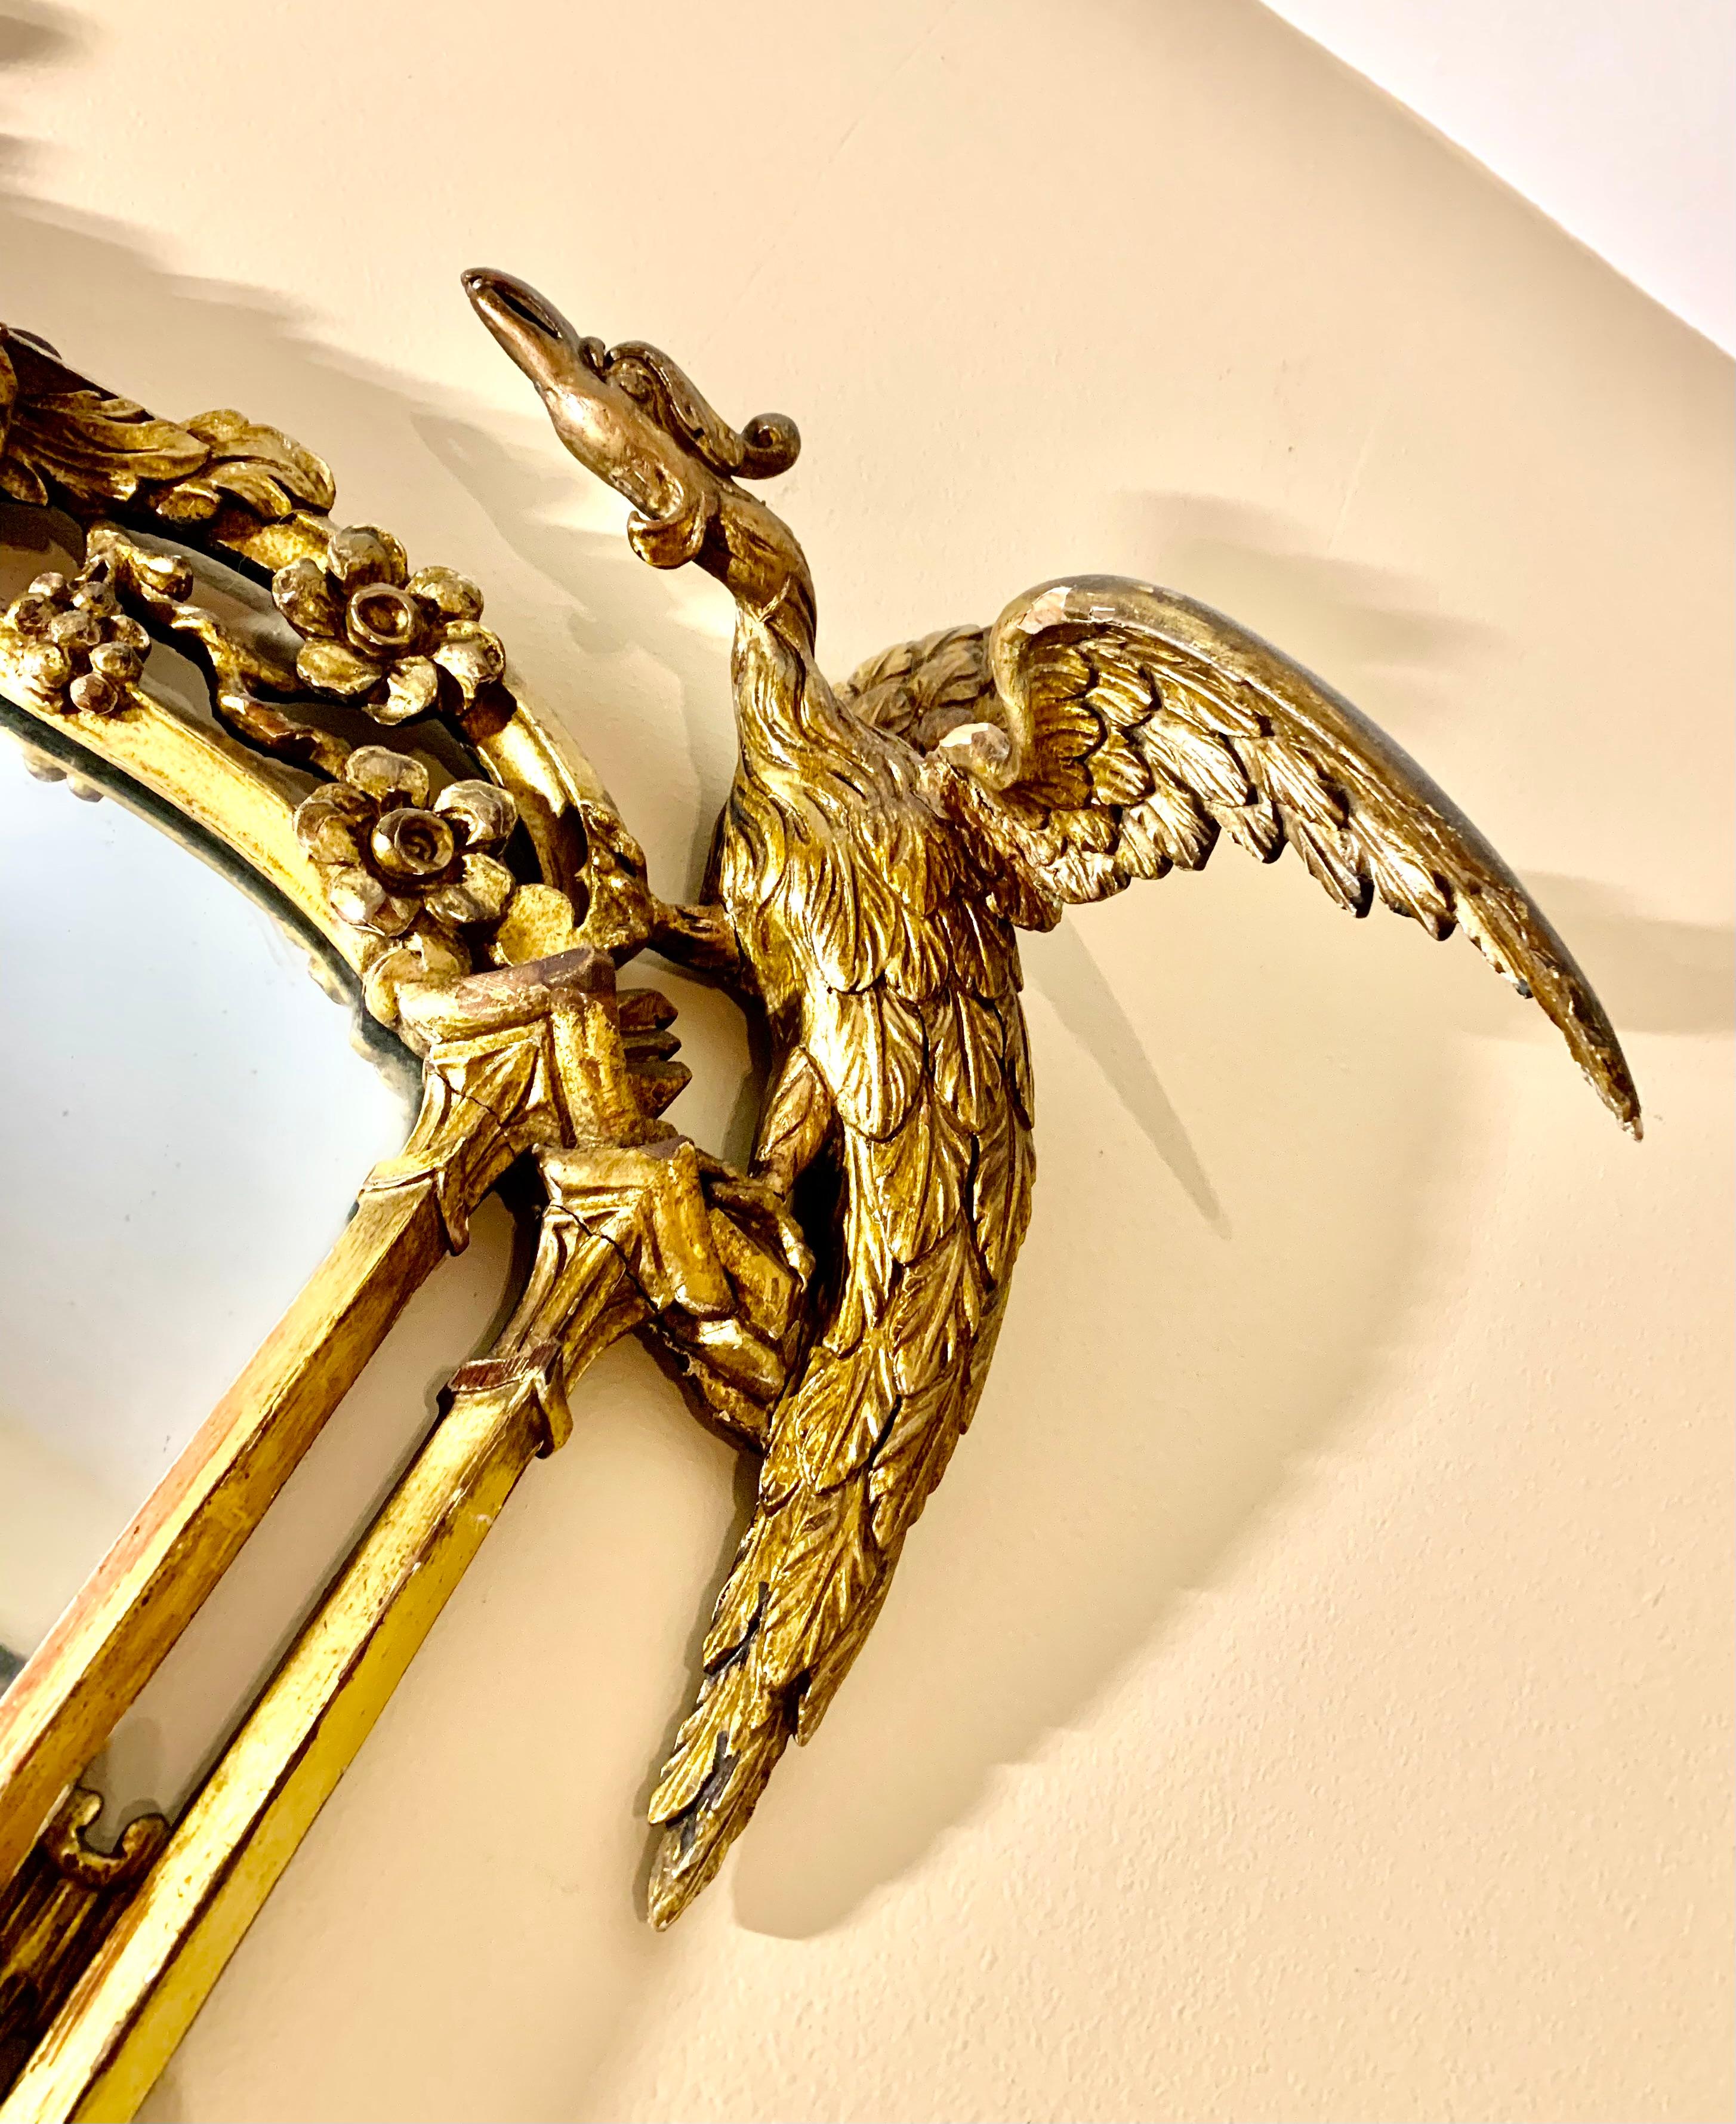 Fabelhafte chinesische Chippendale-Stil geschnitzt vergoldet Mantel Spiegel
19. Jahrhundert
Seltene horizontale Anordnung und ausgezeichnete Qualität der Schnitzerei.
Im Mittelpunkt des Designs steht eine Pagodenkrone, flankiert von Rosen auf